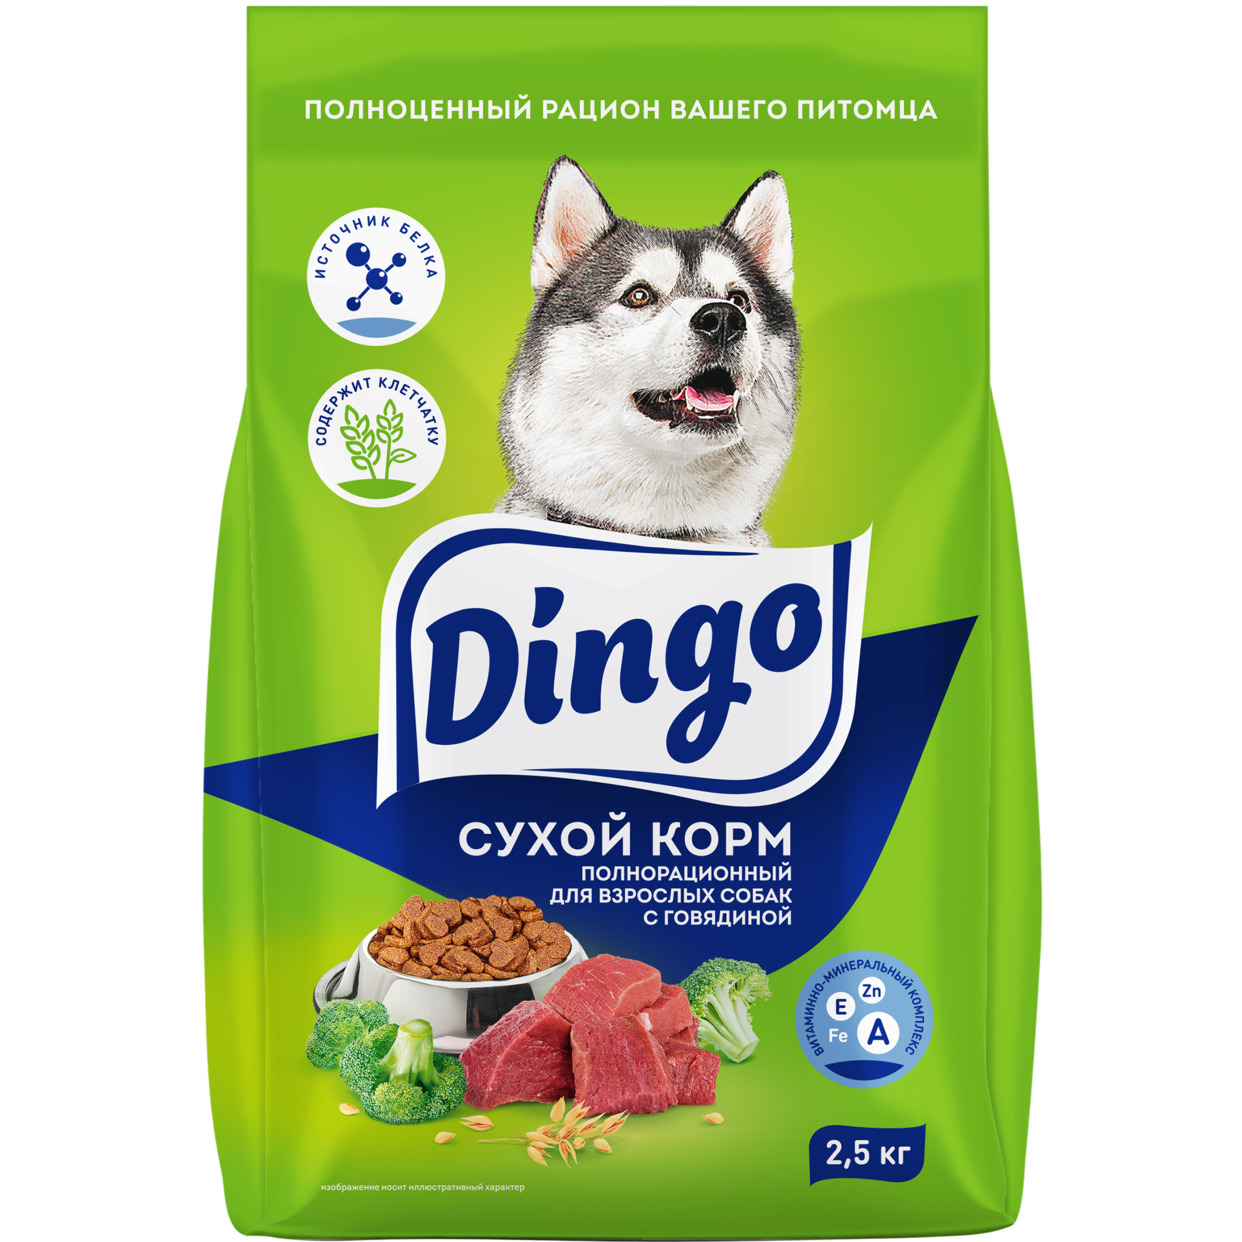 Dingo корм сухой полнорационный для взрослых собак , пп, 2,5 кг